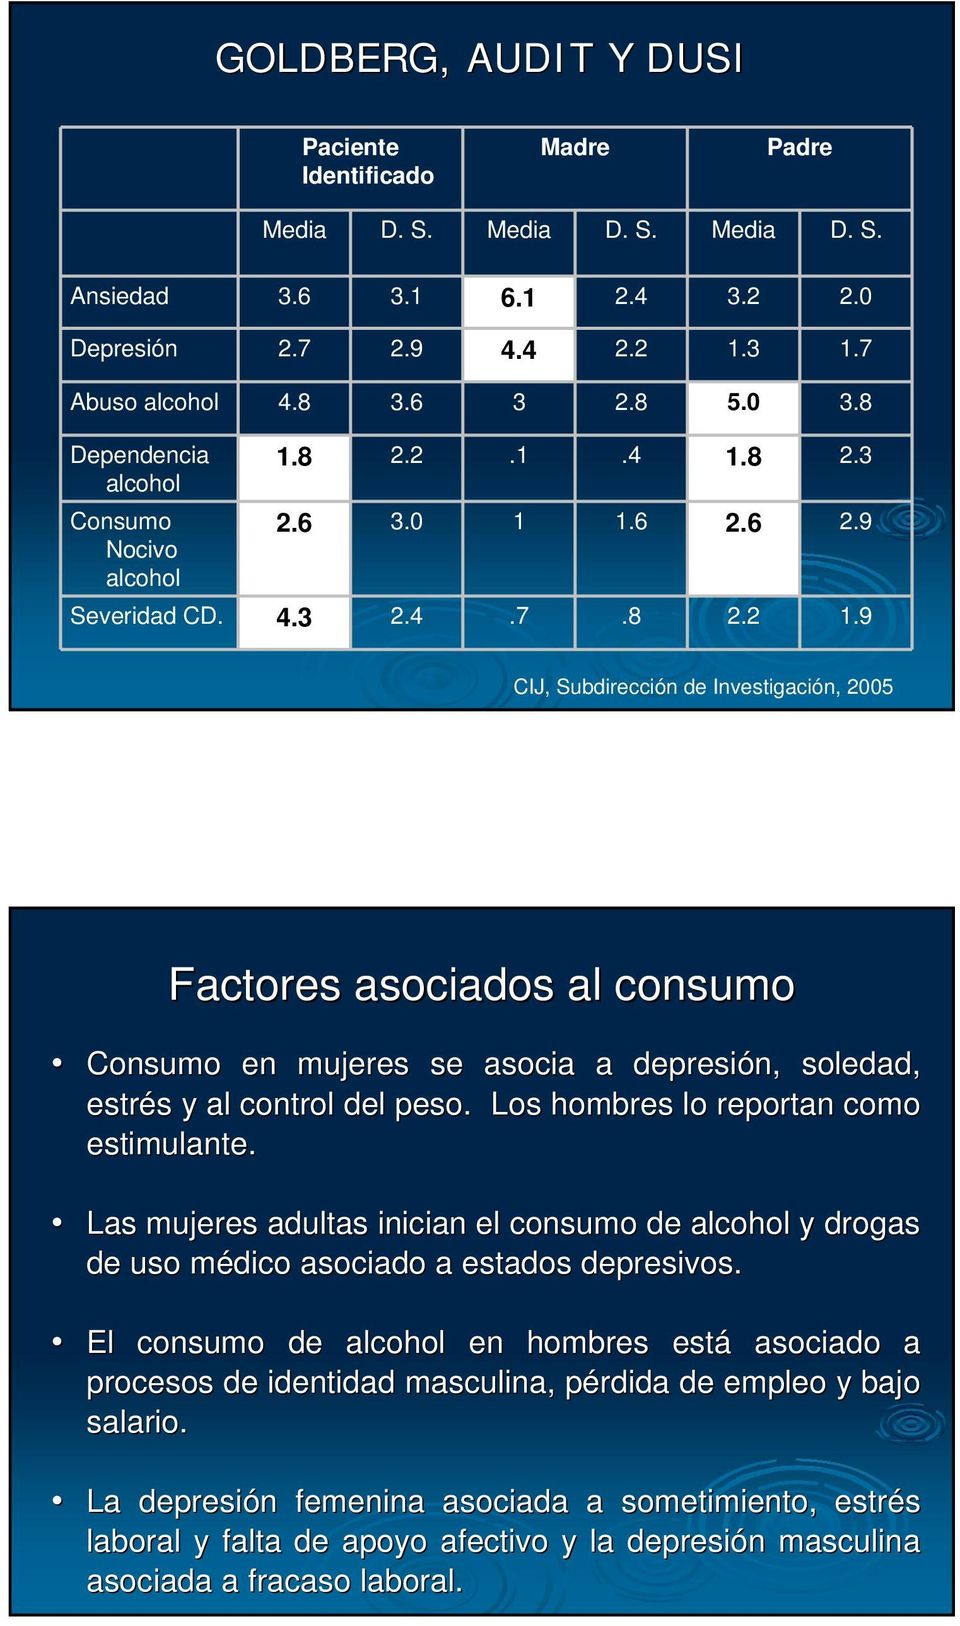 9 CIJ, Subdirección de Investigación, 2005 Factores asociados al consumo Consumo en mujeres se asocia a depresión, soledad, estrés y al control del peso. Los hombres lo reportan como estimulante.